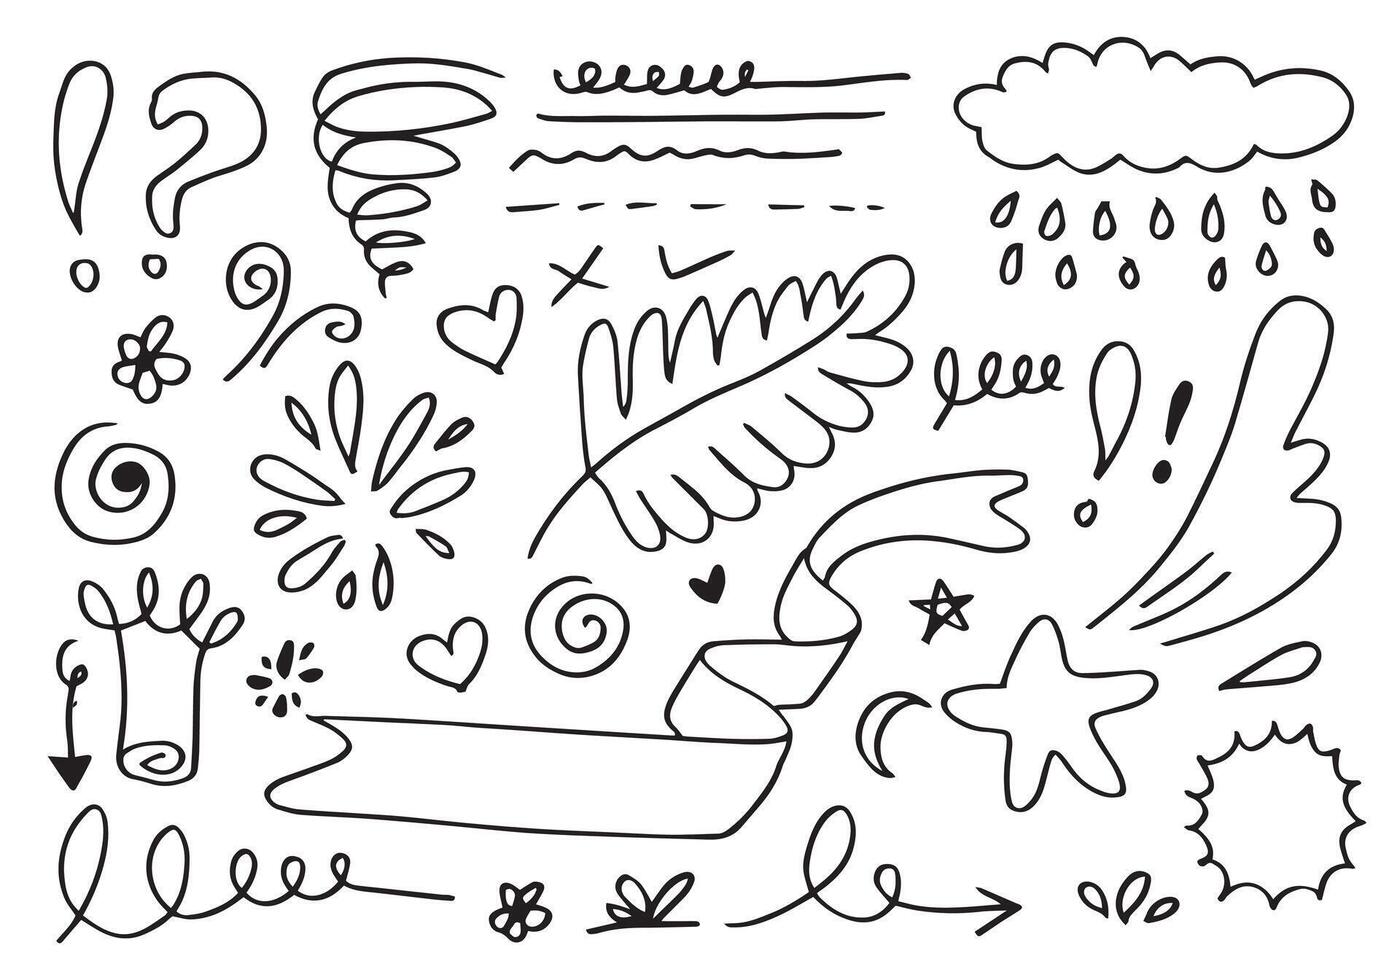 bladeren, harten, abstract, linten, pijlen en andere elementen in de hand getekende stijlen voor conceptontwerpen. doodle illustratie. vectorsjabloon voor decoratie vector